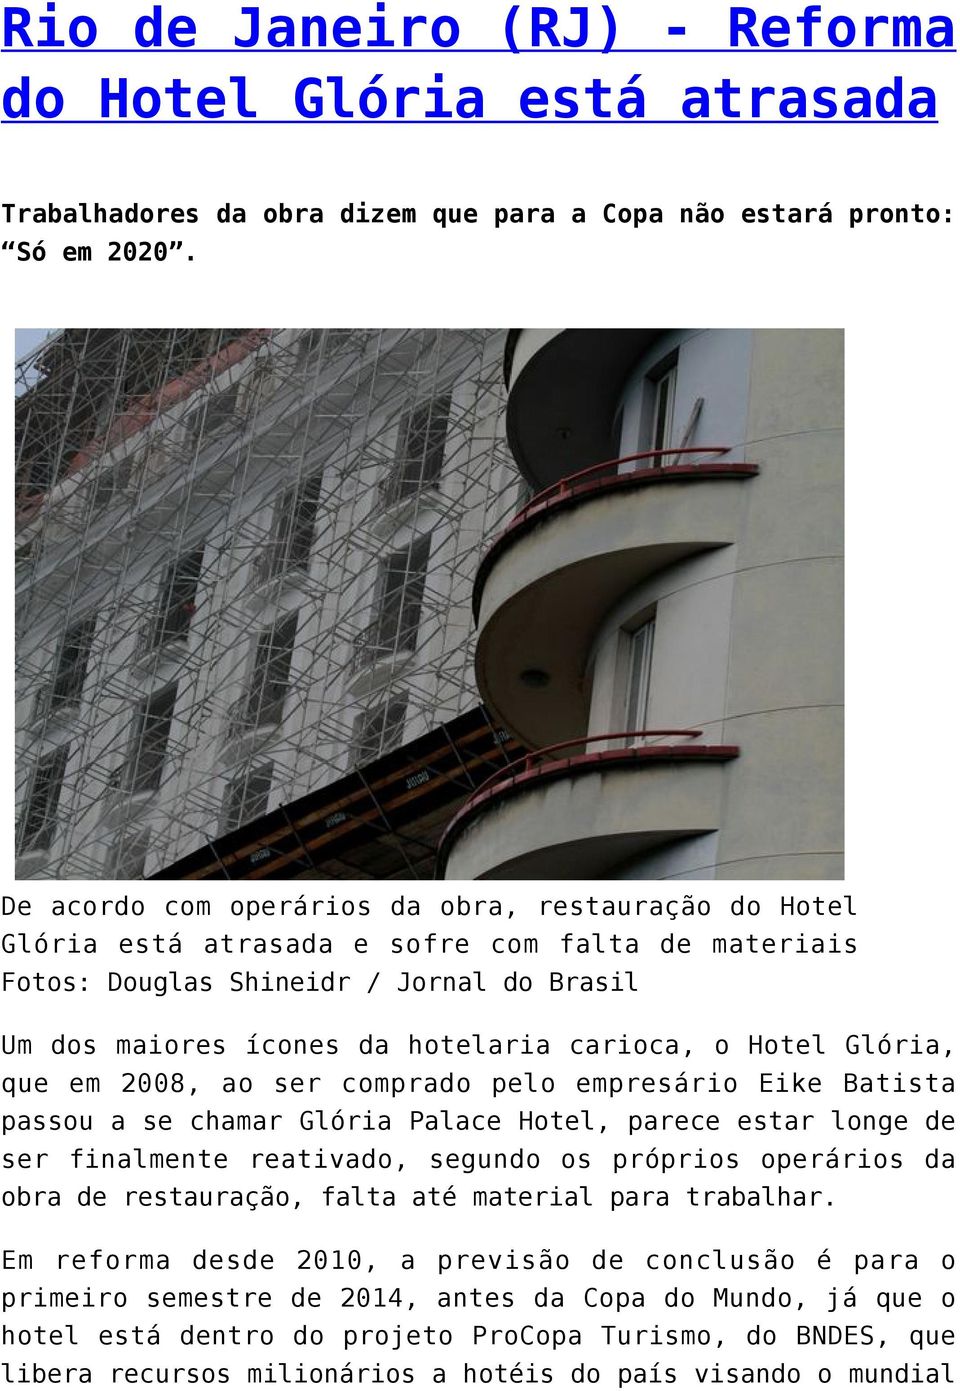 Hotel Glória, que em 2008, ao ser comprado pelo empresário Eike Batista passou a se chamar Glória Palace Hotel, parece estar longe de ser finalmente reativado, segundo os próprios operários da obra